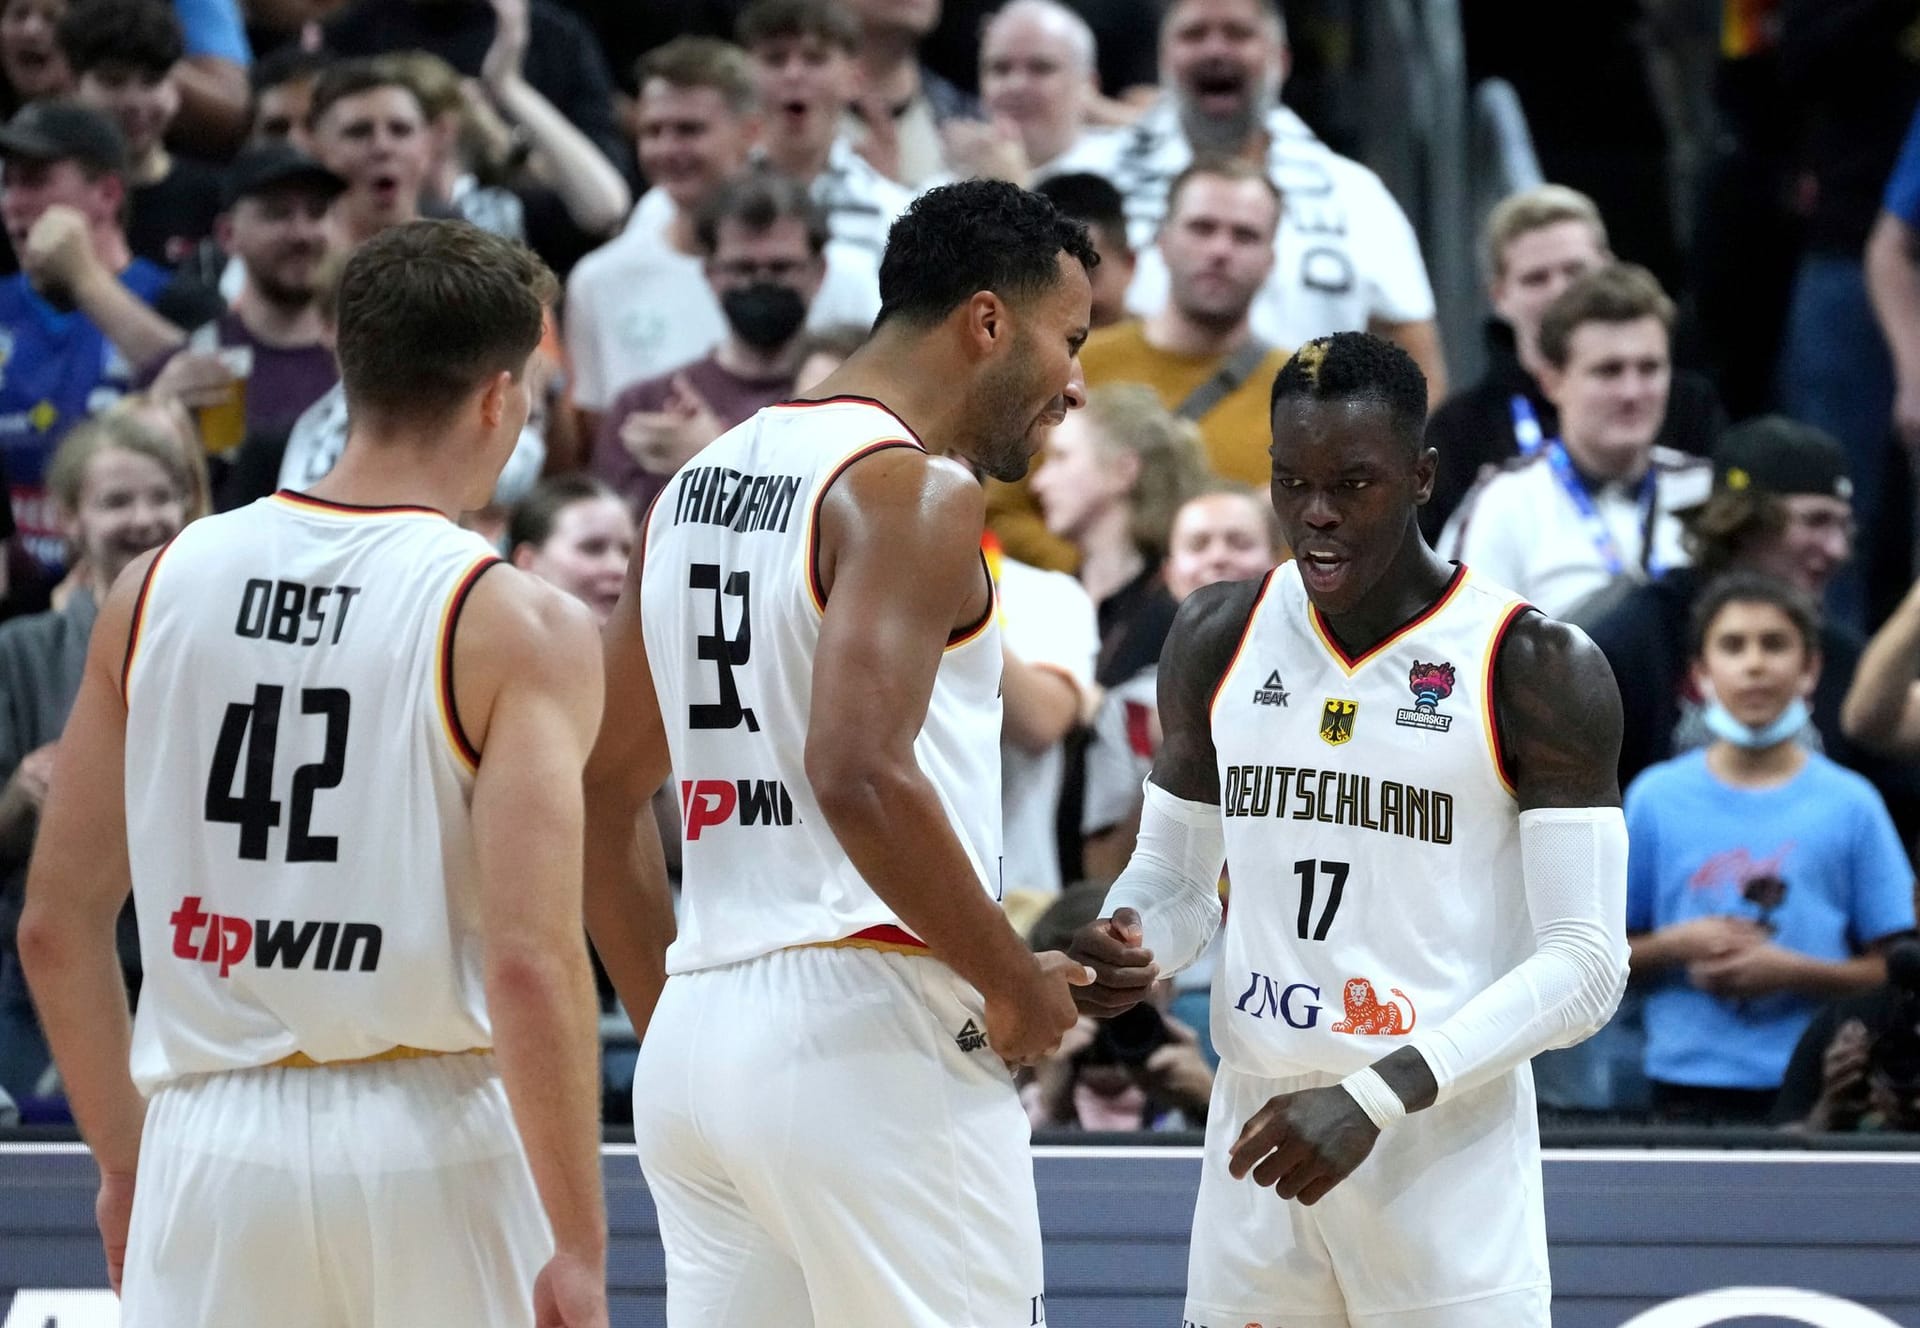 Der Traum vom Titel bei der Heim-EM ist für die deutschen Basketballer geplatzt. Dabei hätte Kapitän Dennis Schröder das Team fast im Alleingang ins Finale geführt.